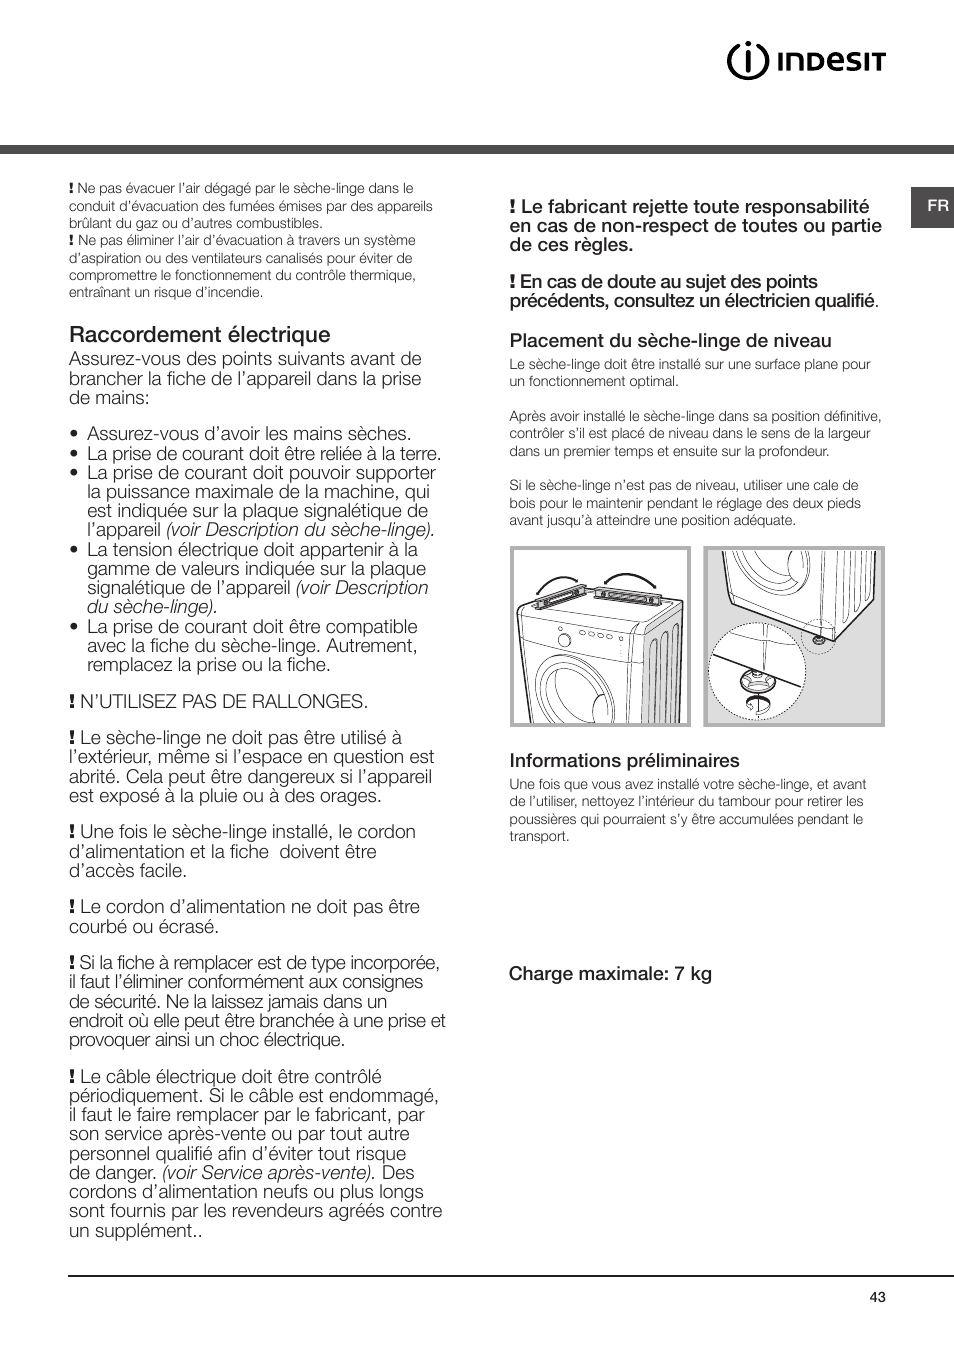 Installation, Où installer le sèche-linge, Raccordement électrique | Indesit  IDV-75-(EU) User Manual | Page 43 / 70 | Original mode